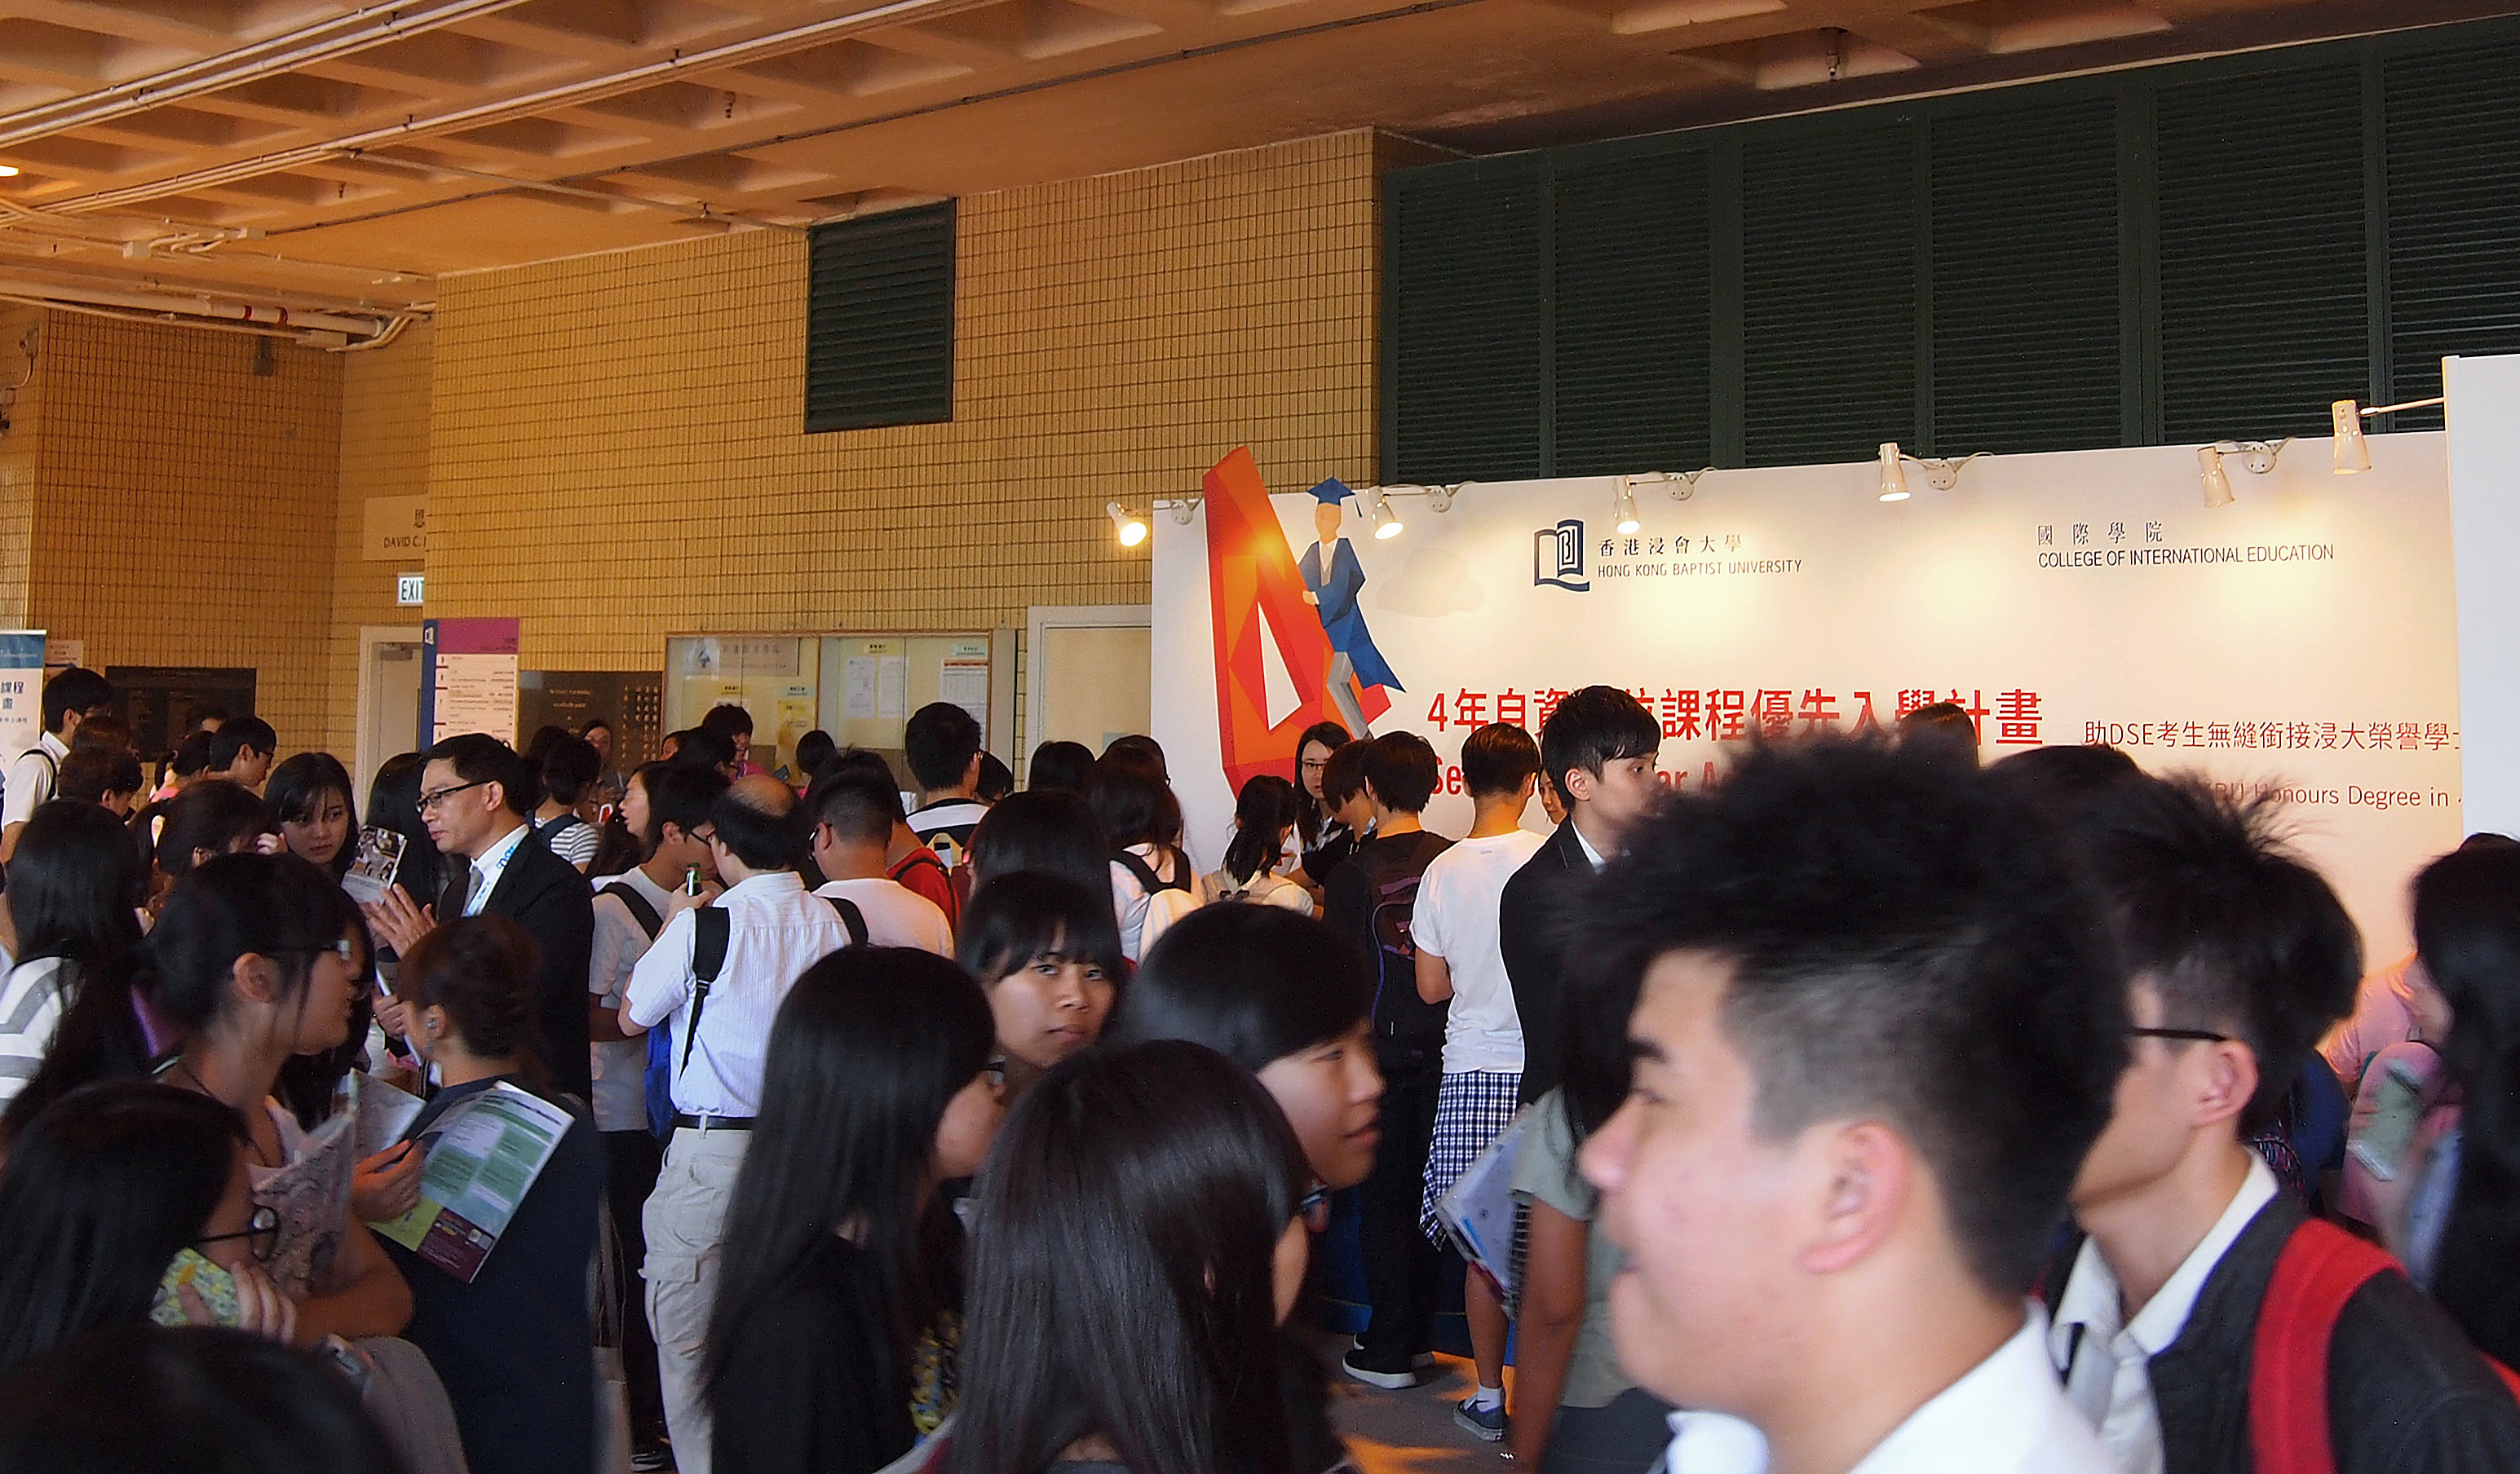 課程展覽攤位設於九龍塘校園李作權大道，查詢者眾，反應熱烈。